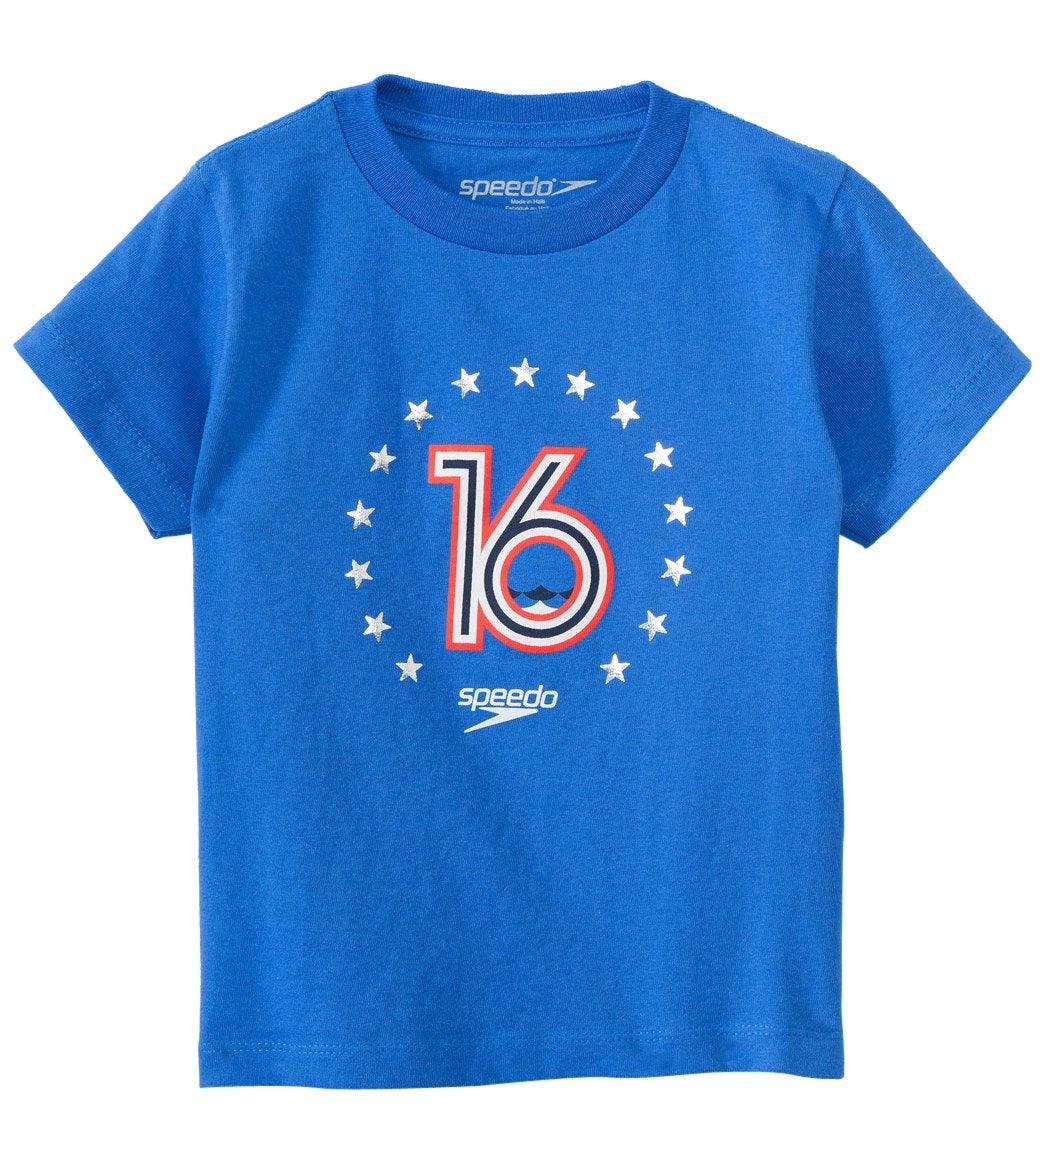 Speedo Men's Toddler 16 Tee Shirt - Blue 3T Cotton - Swimoutlet.com